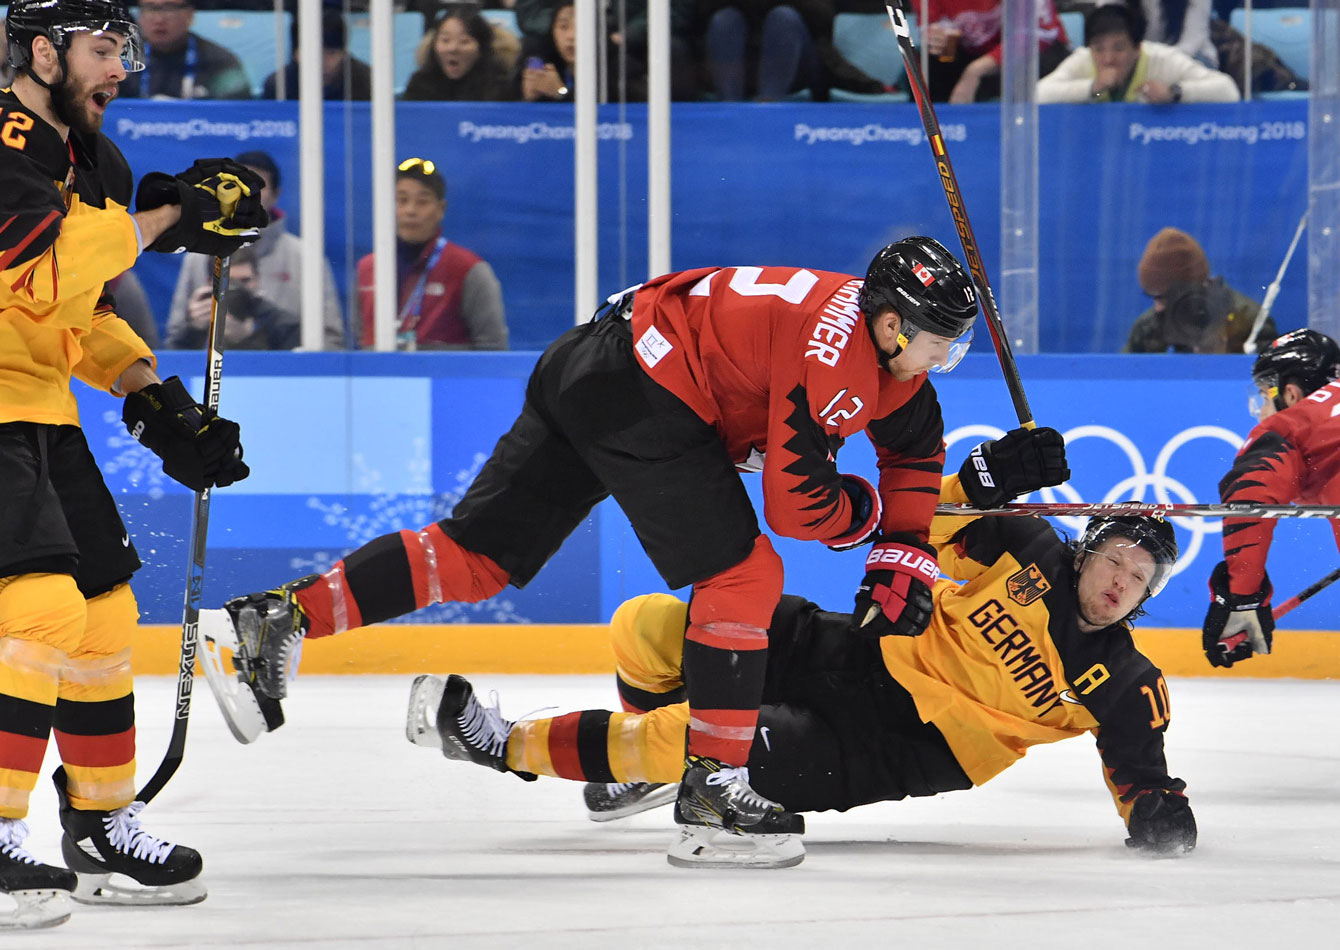 Team Canada Germany Ice Hockey PyeongChang 2018